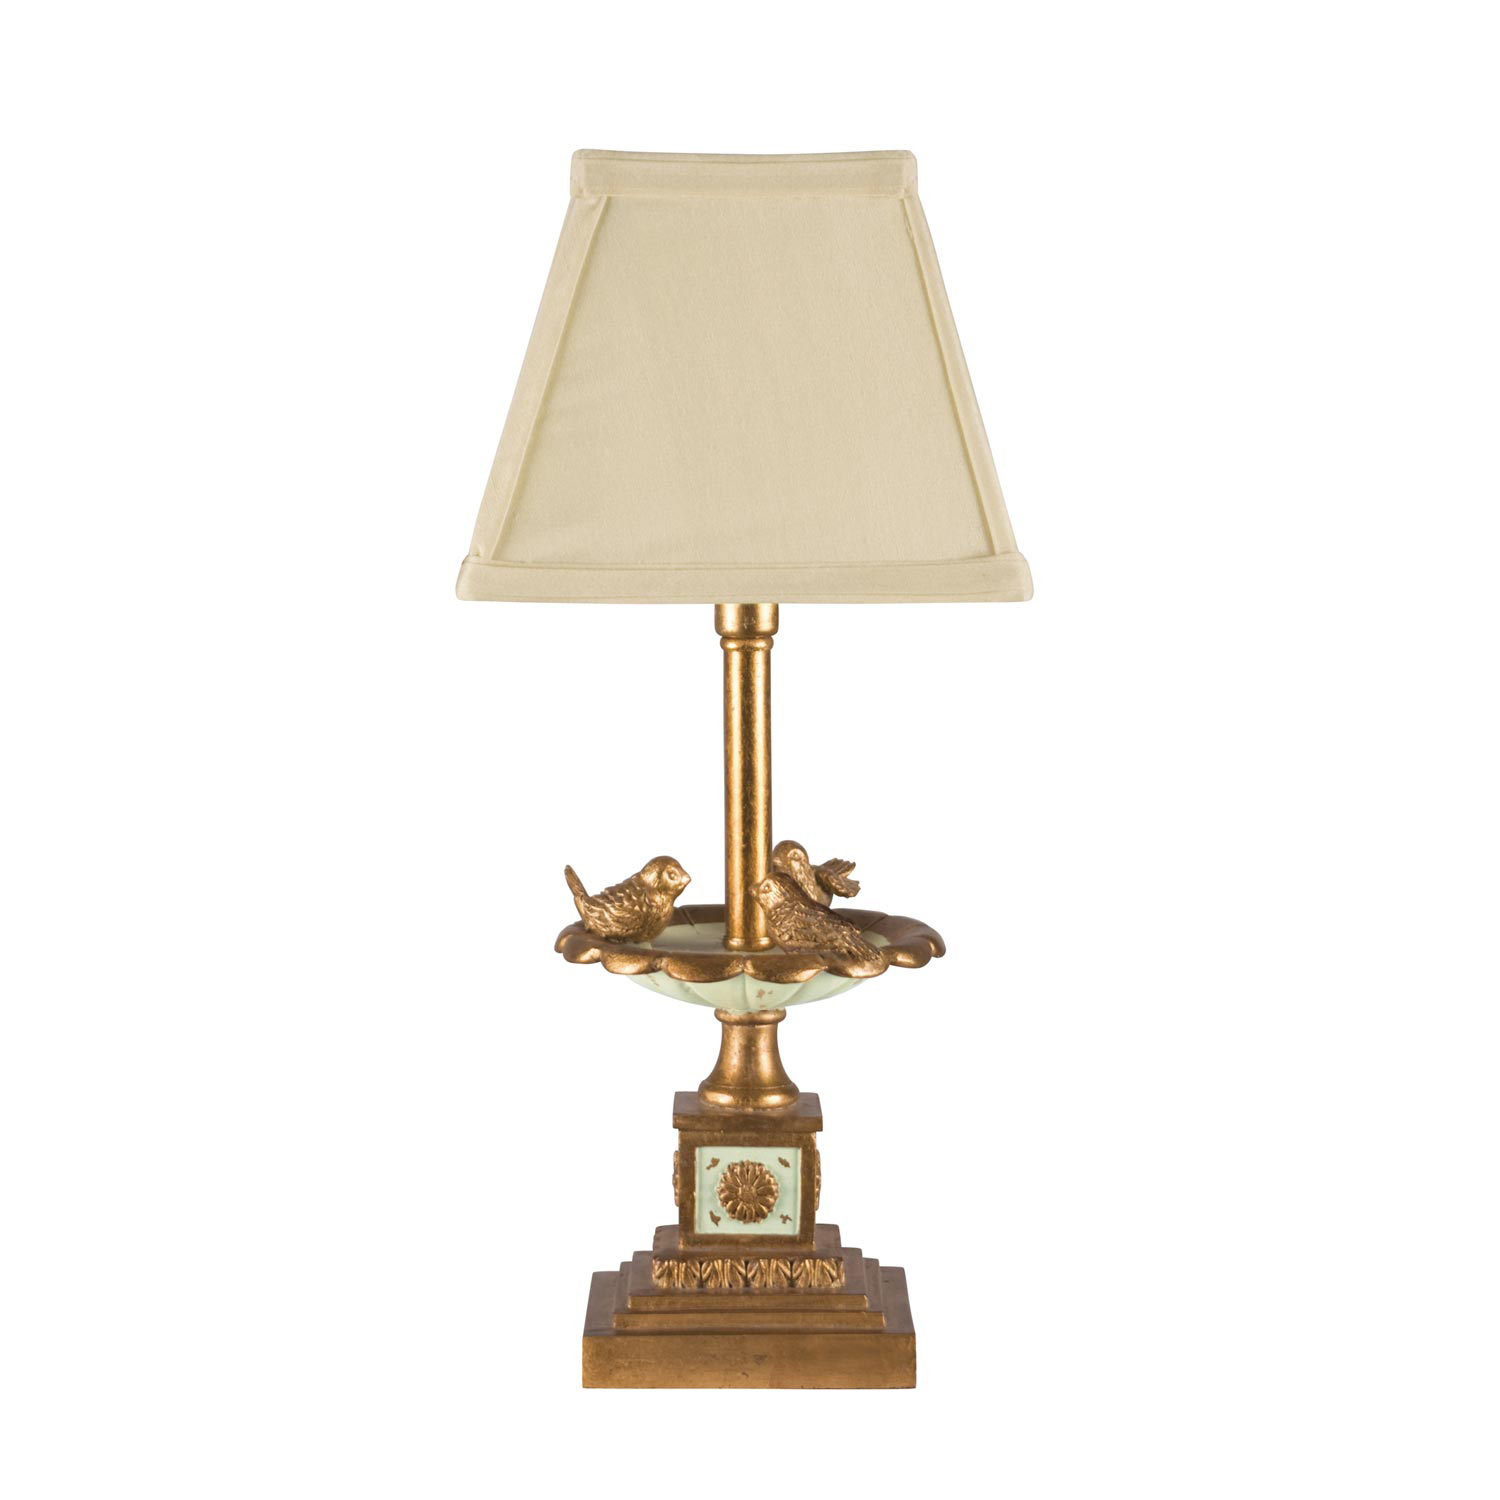 Elk Lighting 93-935 Bird Bath Table Lamp